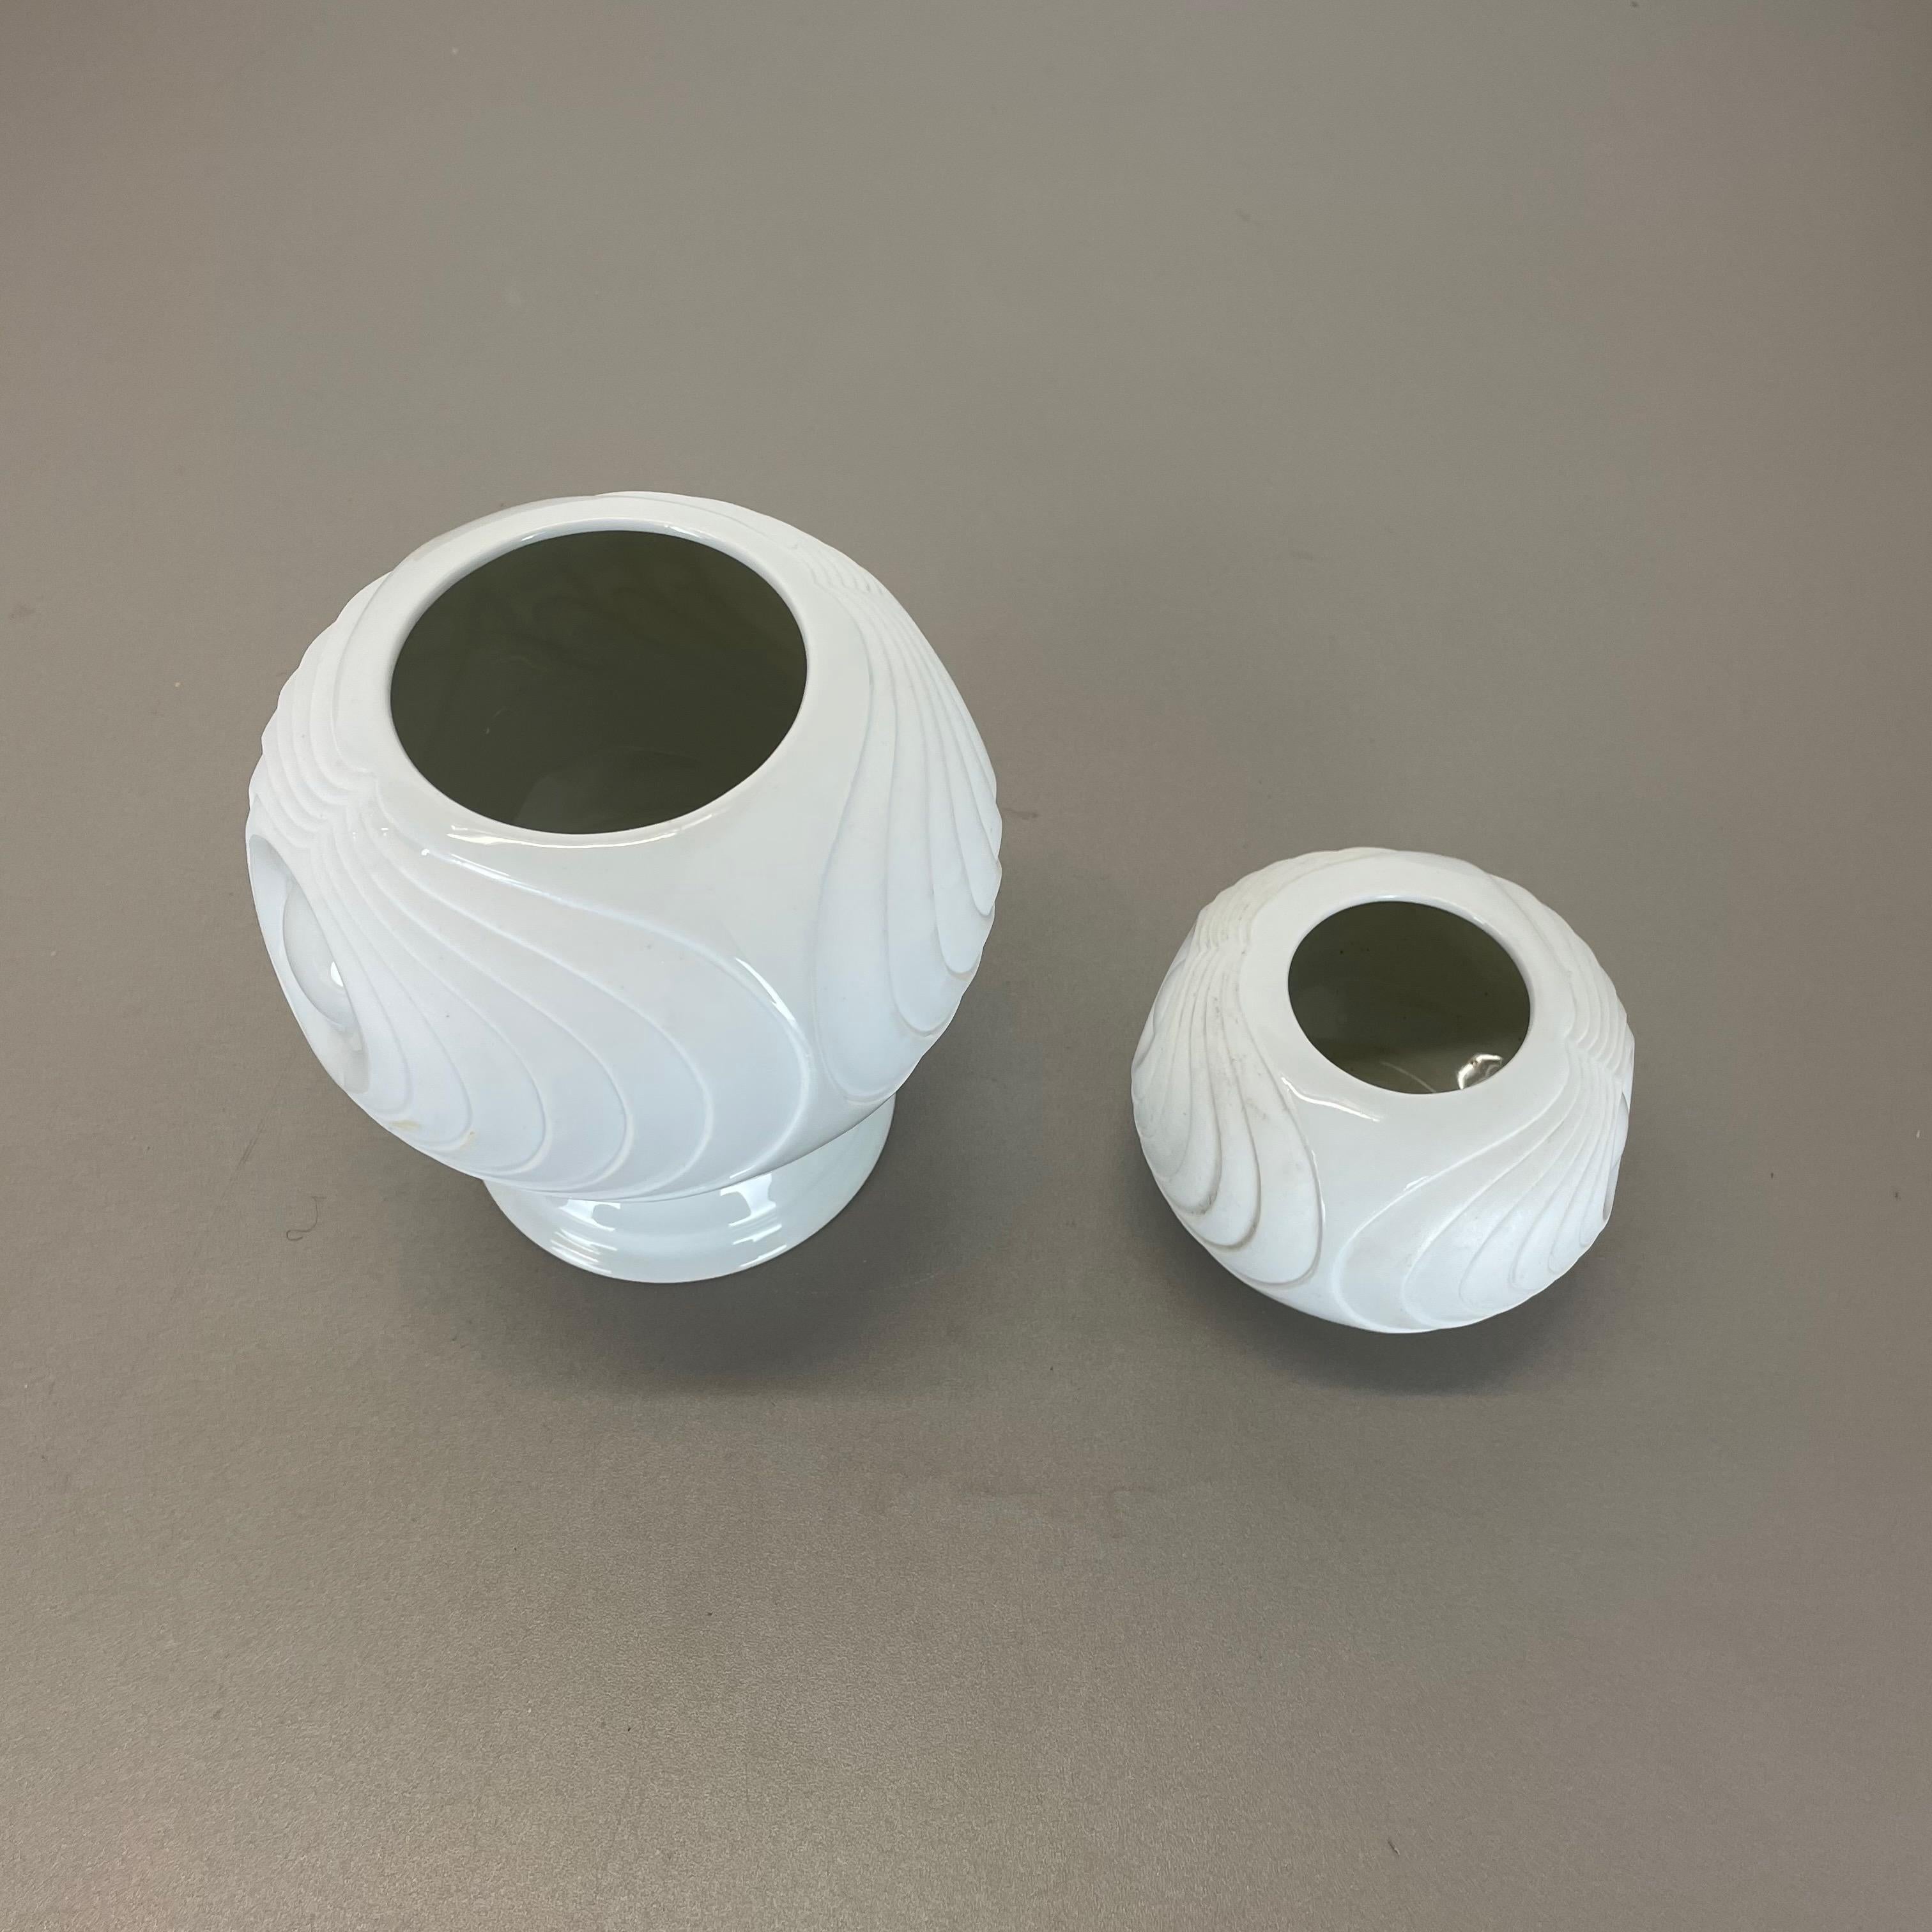 Set of 2 Original Porcelain OP Art Vase Made by Royal Bavaria KPM Germany, 1970s For Sale 7